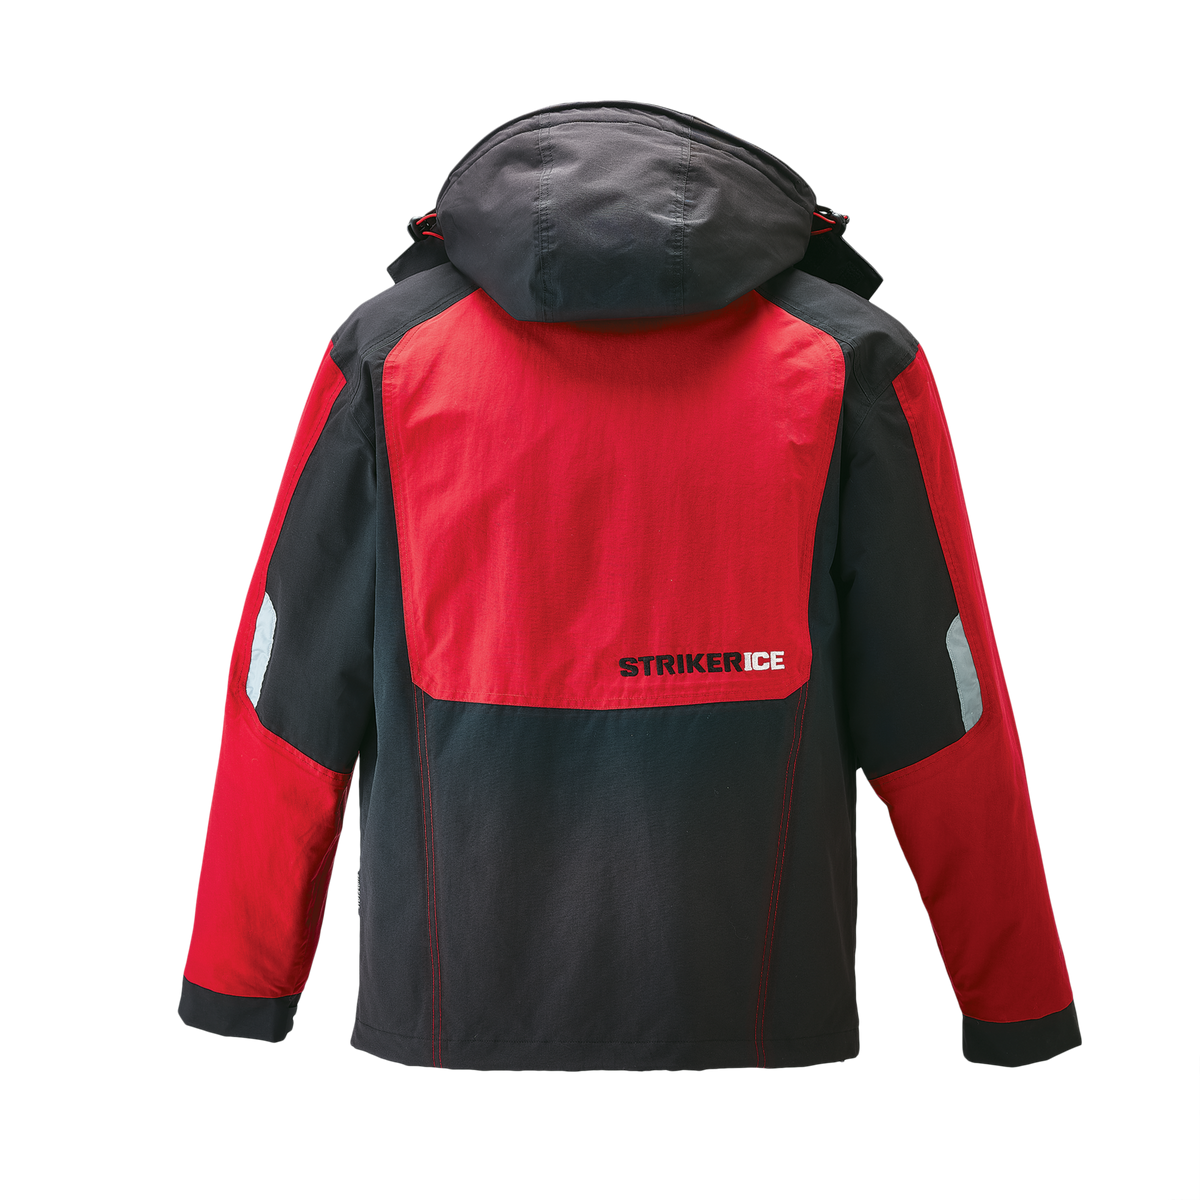 Striker Ice Climate Jacket - Red/Black - Back